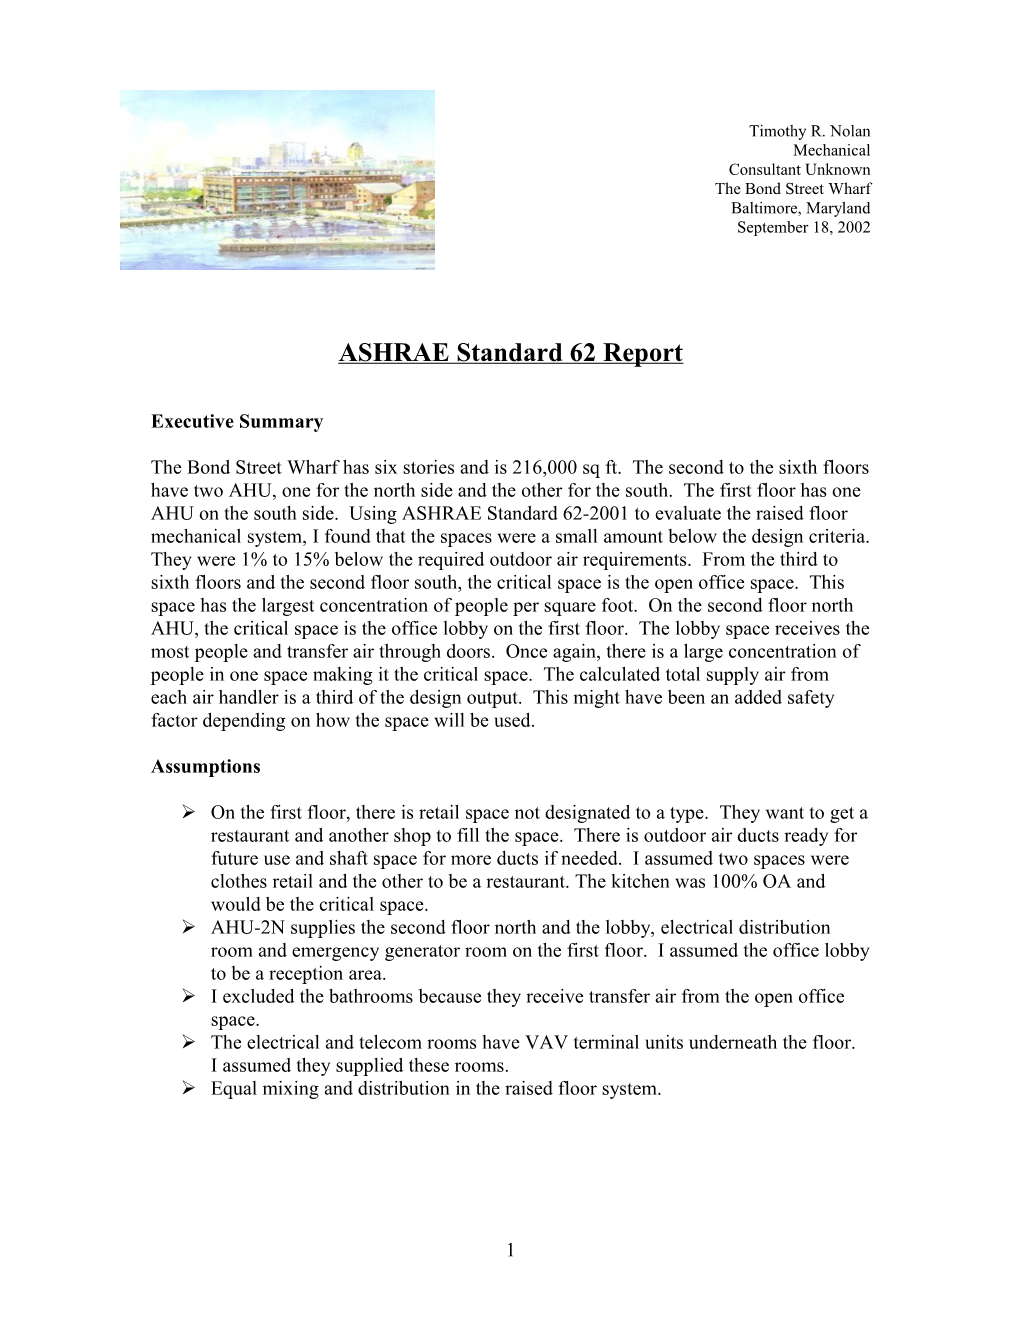 ASHRAE Standard 62 Report